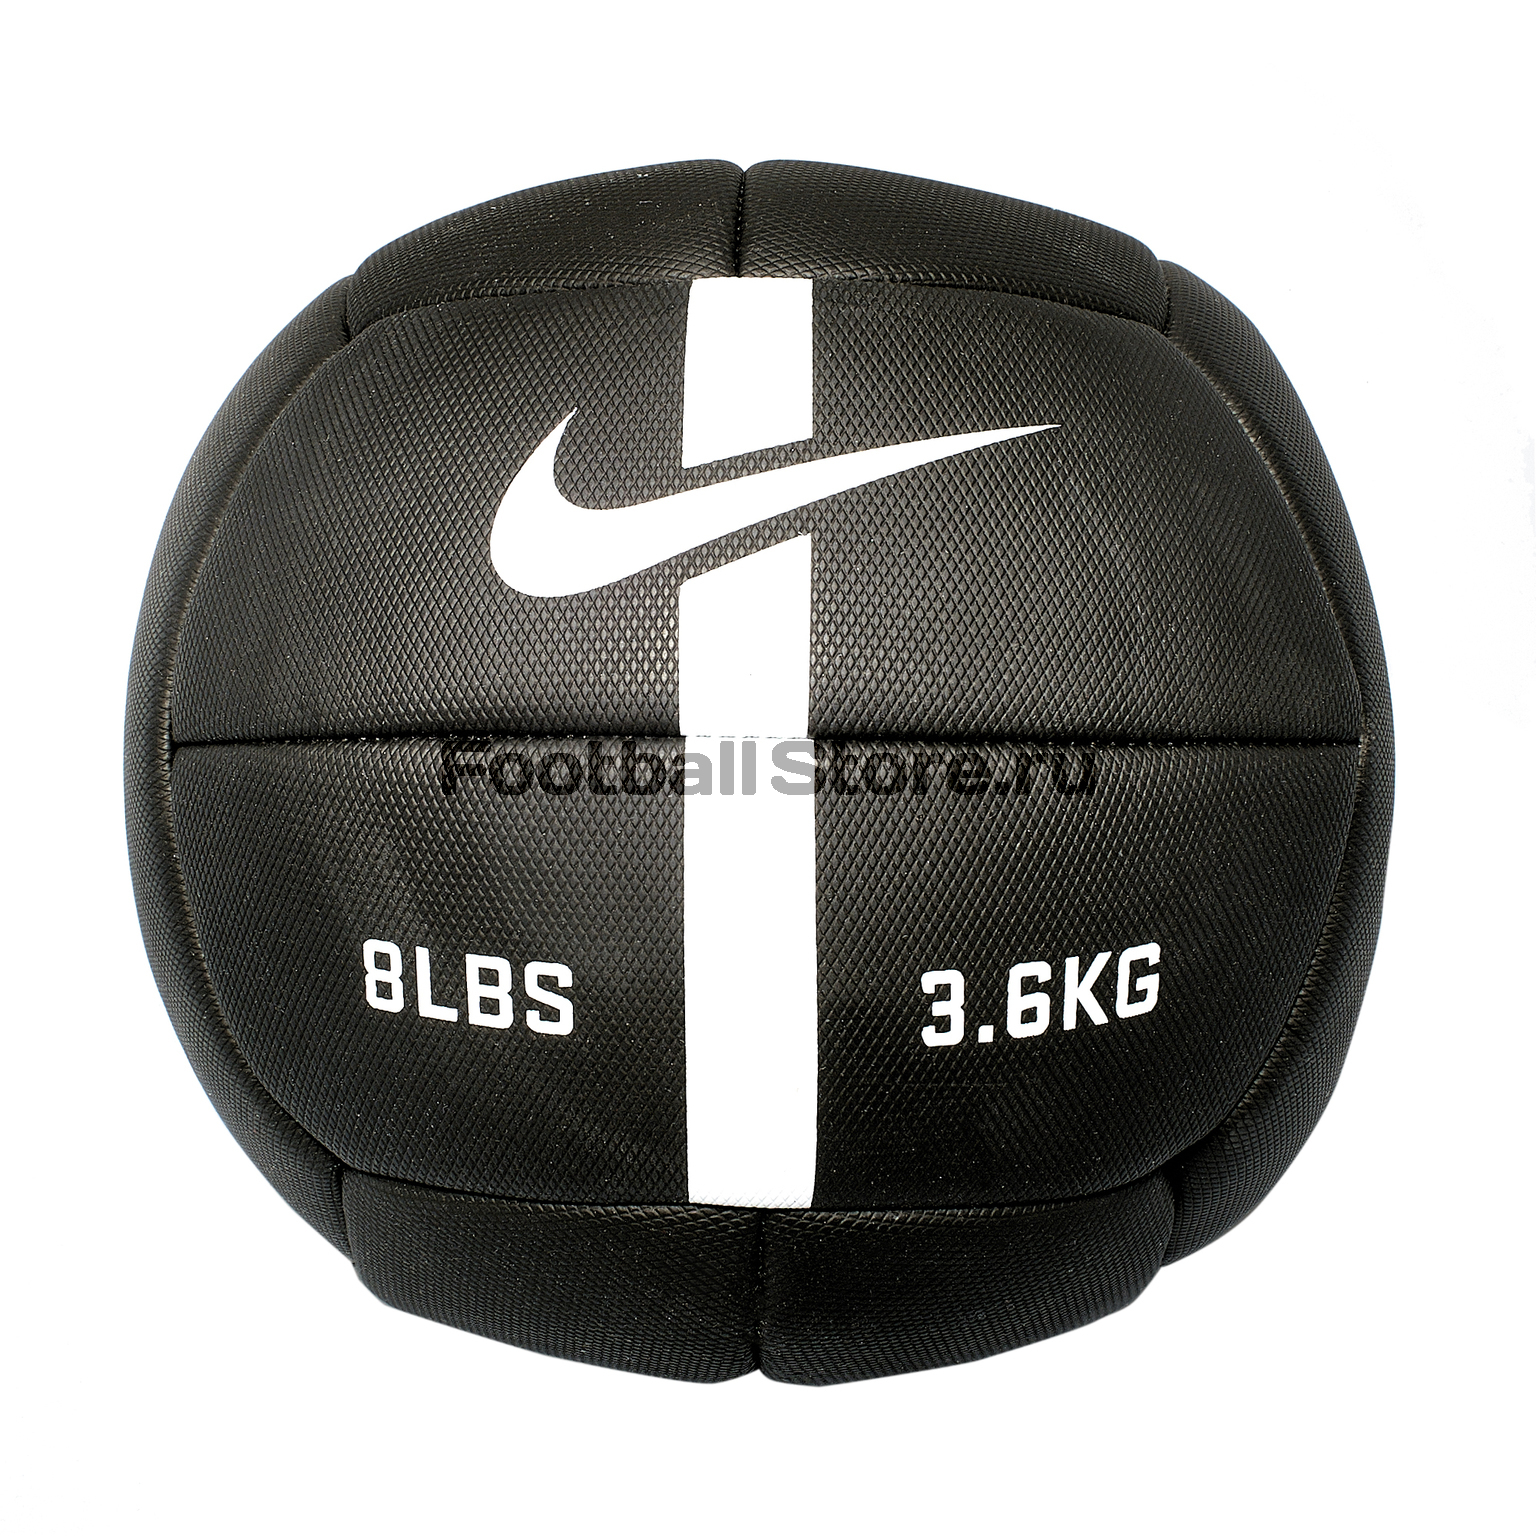 Мяч для тренировок Nike 8 LBS 3.6 KG N.EW.05.010.NS